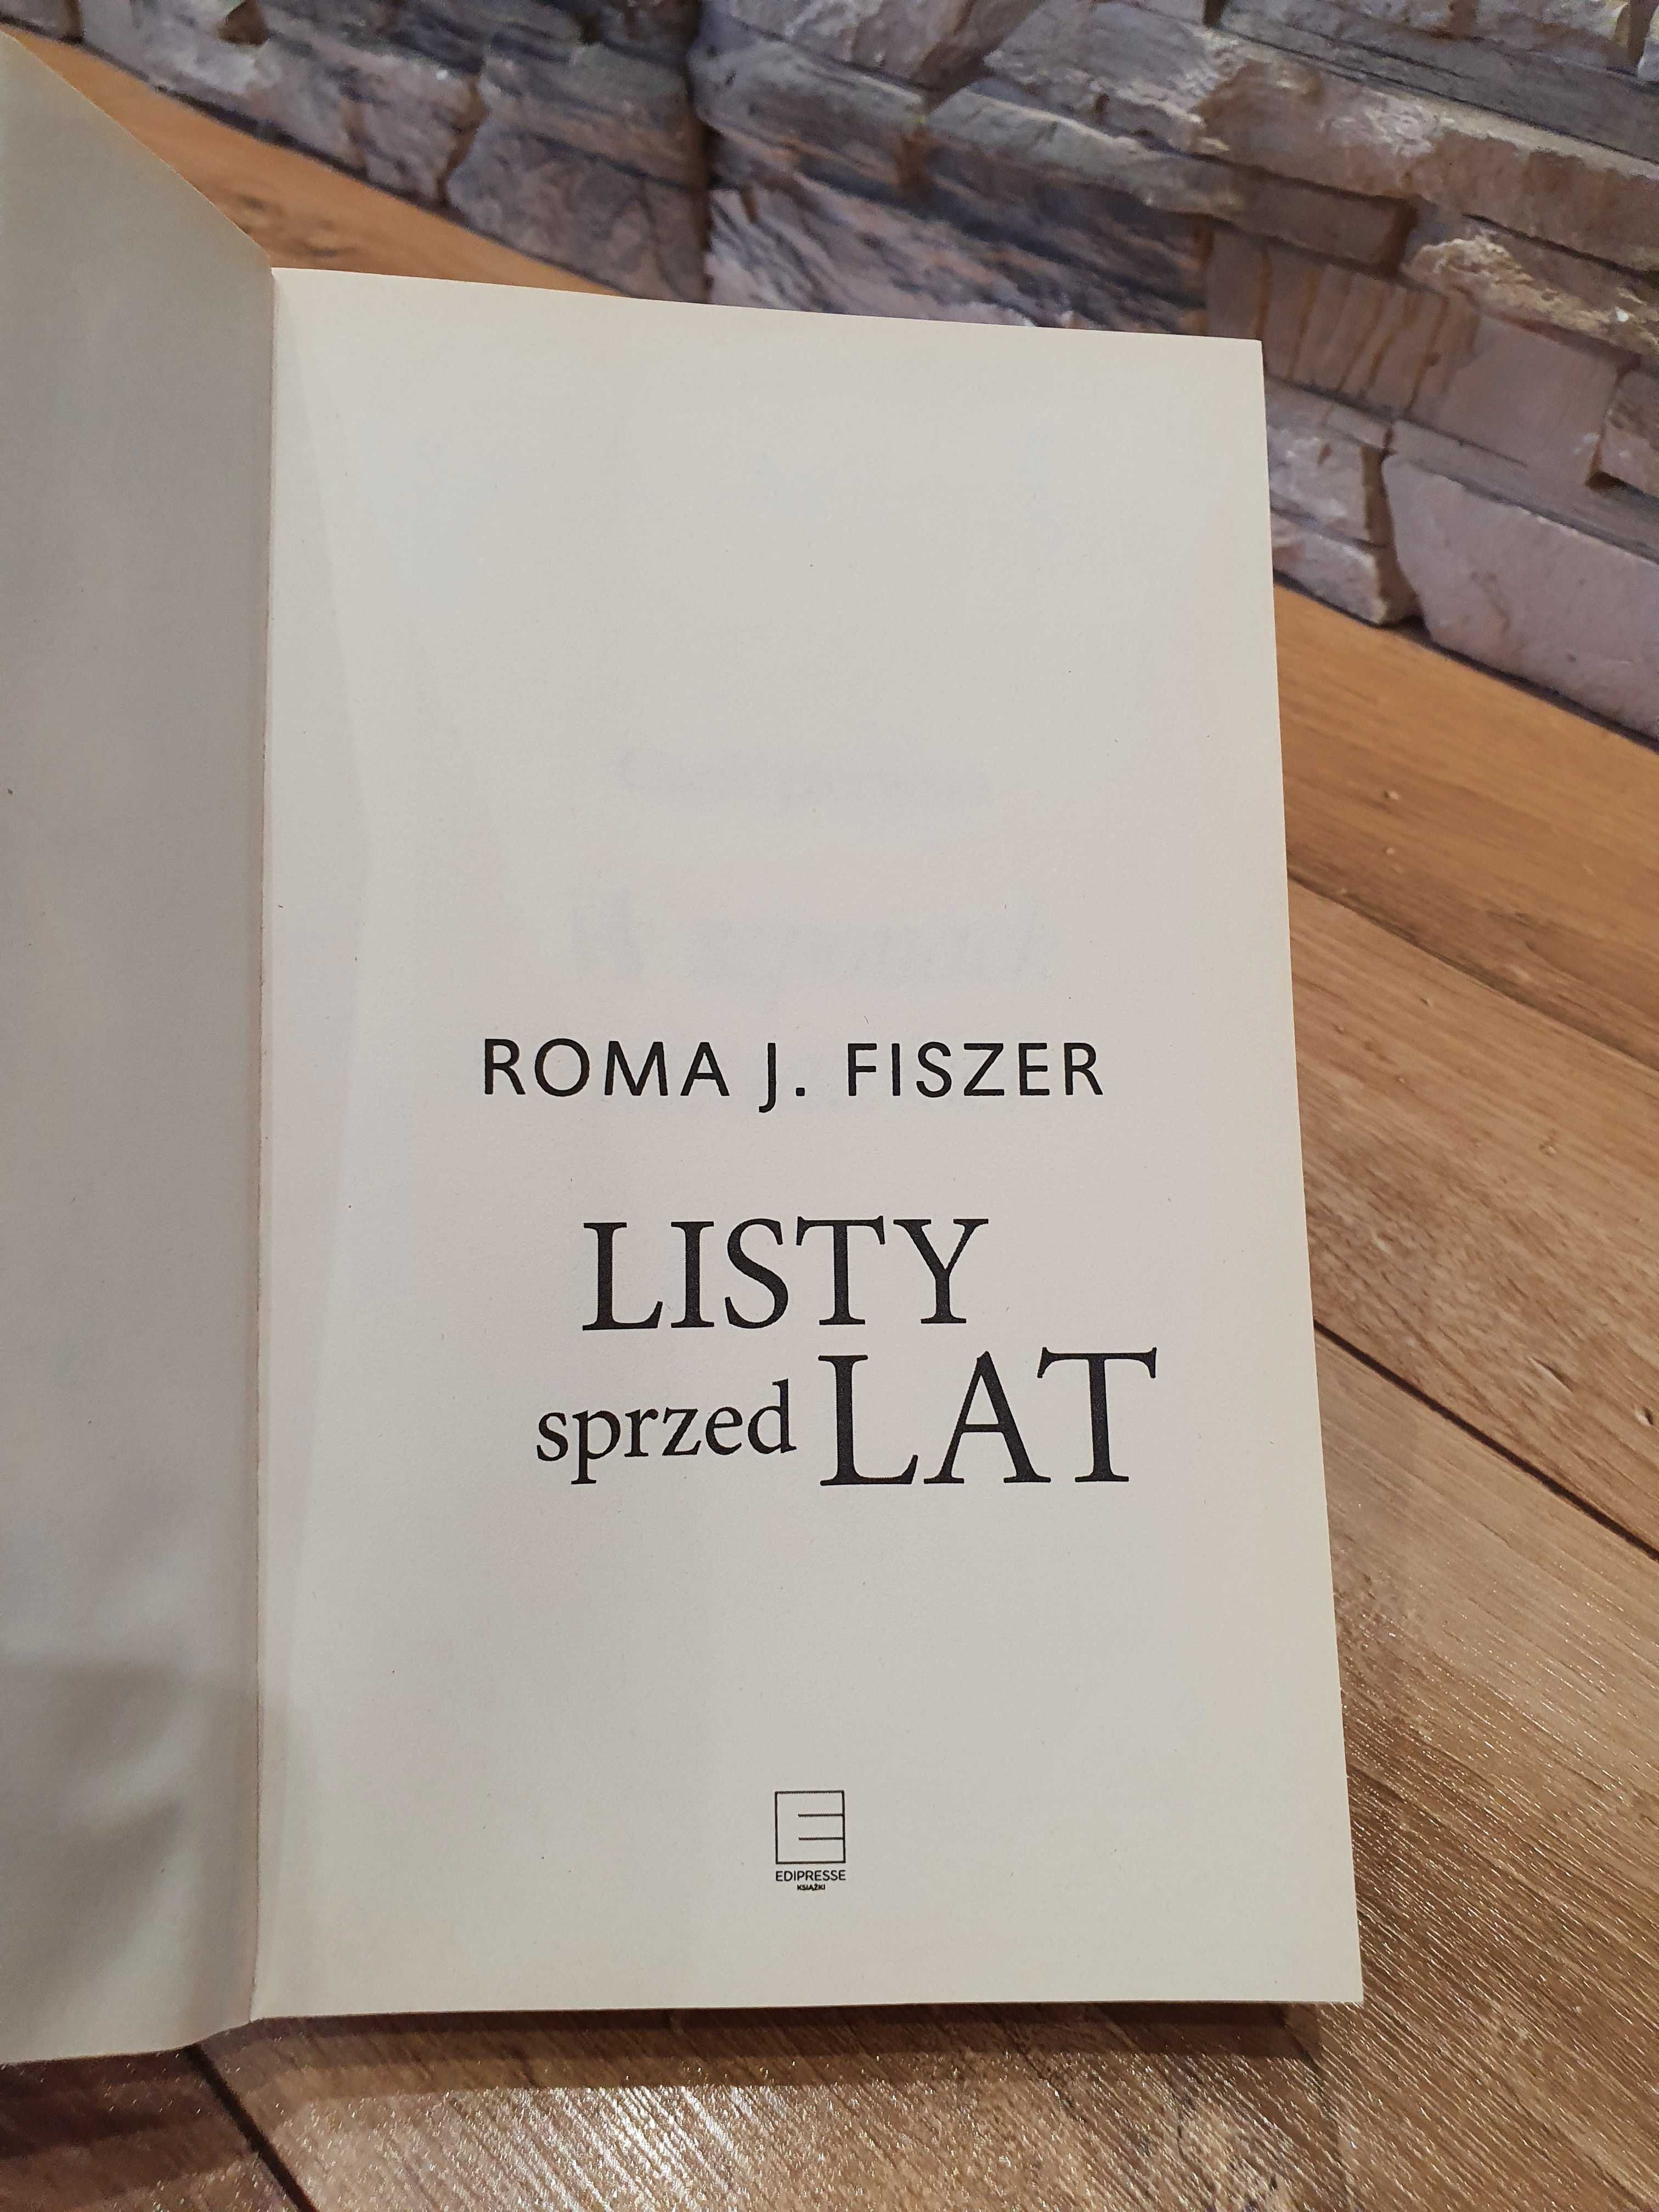 Książka "Listy sprzed lat" Roma J. Fiszer